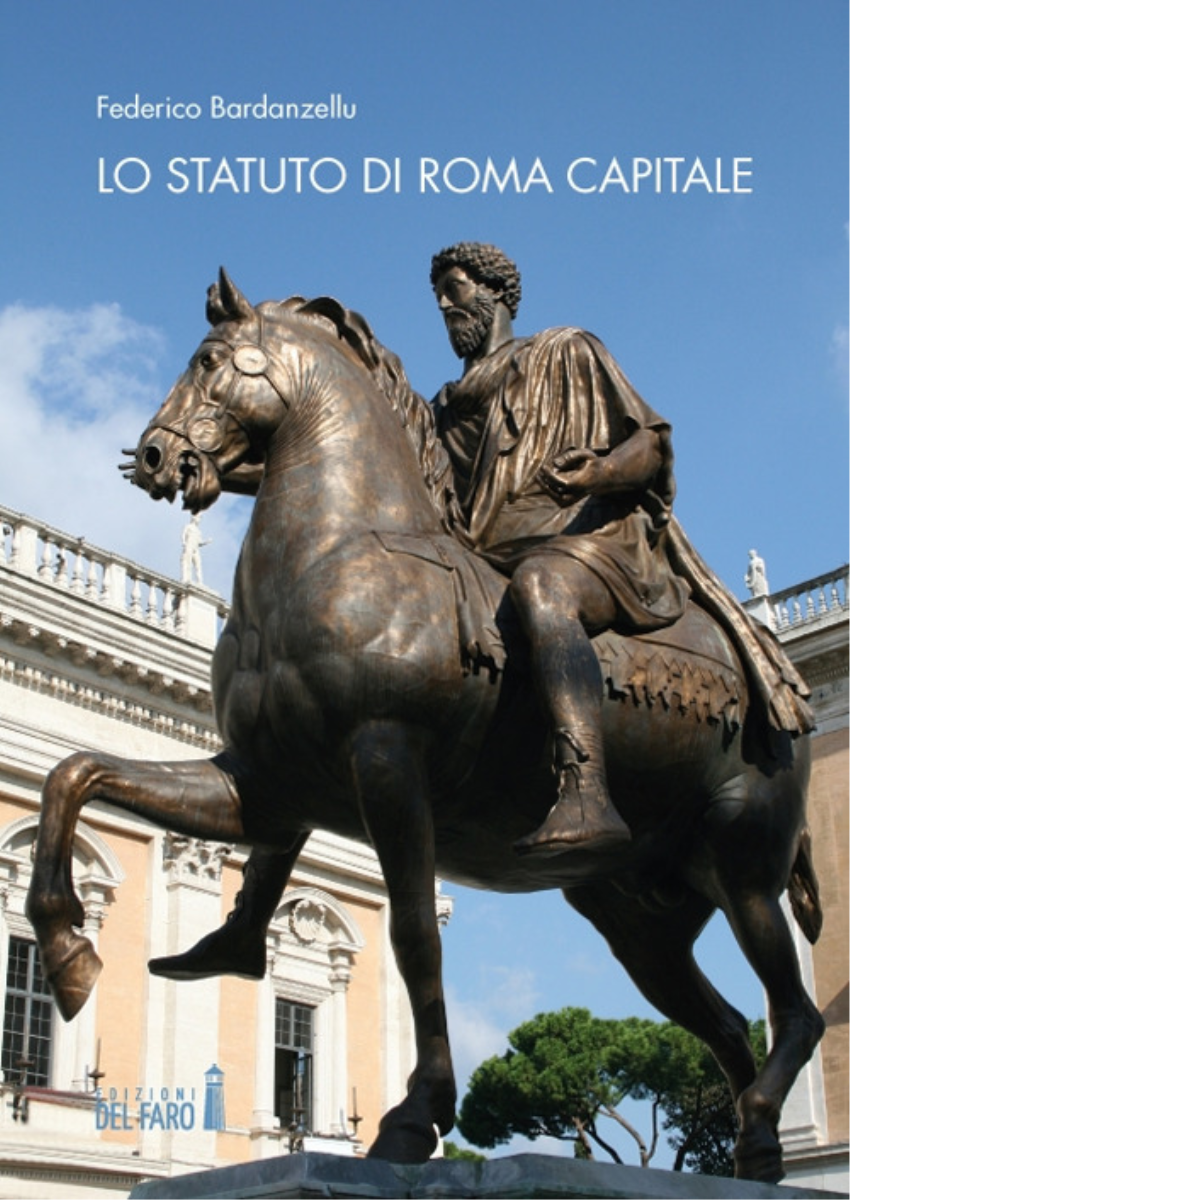 Lo Statuto di Roma Capitale di Federico Bardanzellu - Edizioni Del faro, 2019